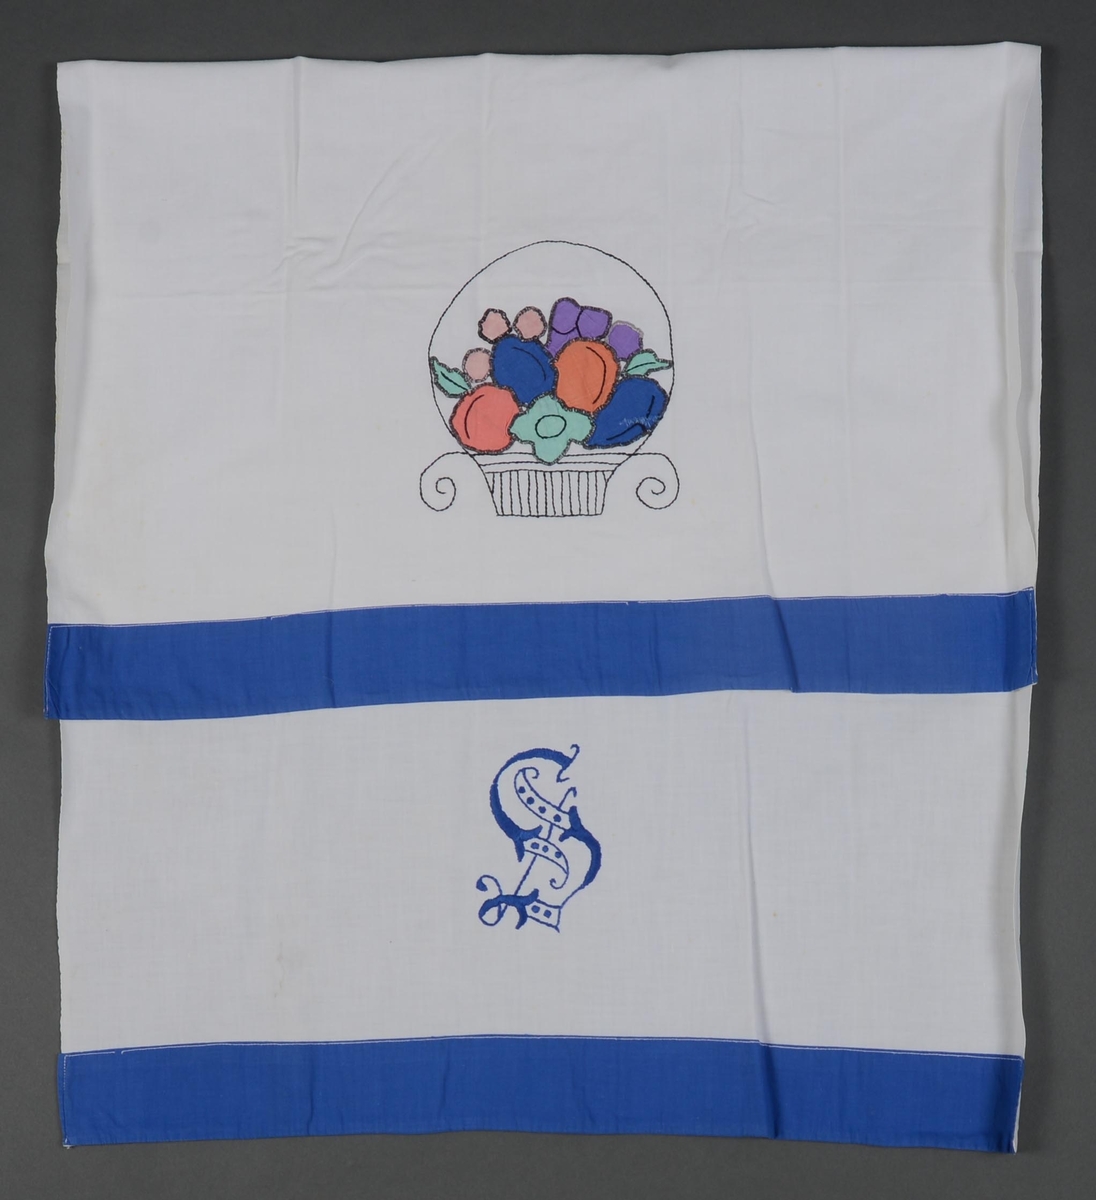 Pyntehåndkle i hvit bomull kantet med blå bomull. Brodert bokstaven "S" ved den ene enden og applikert frukt i flere farger i en brodert kurv. Applikasjonen er kantet med tungesting.